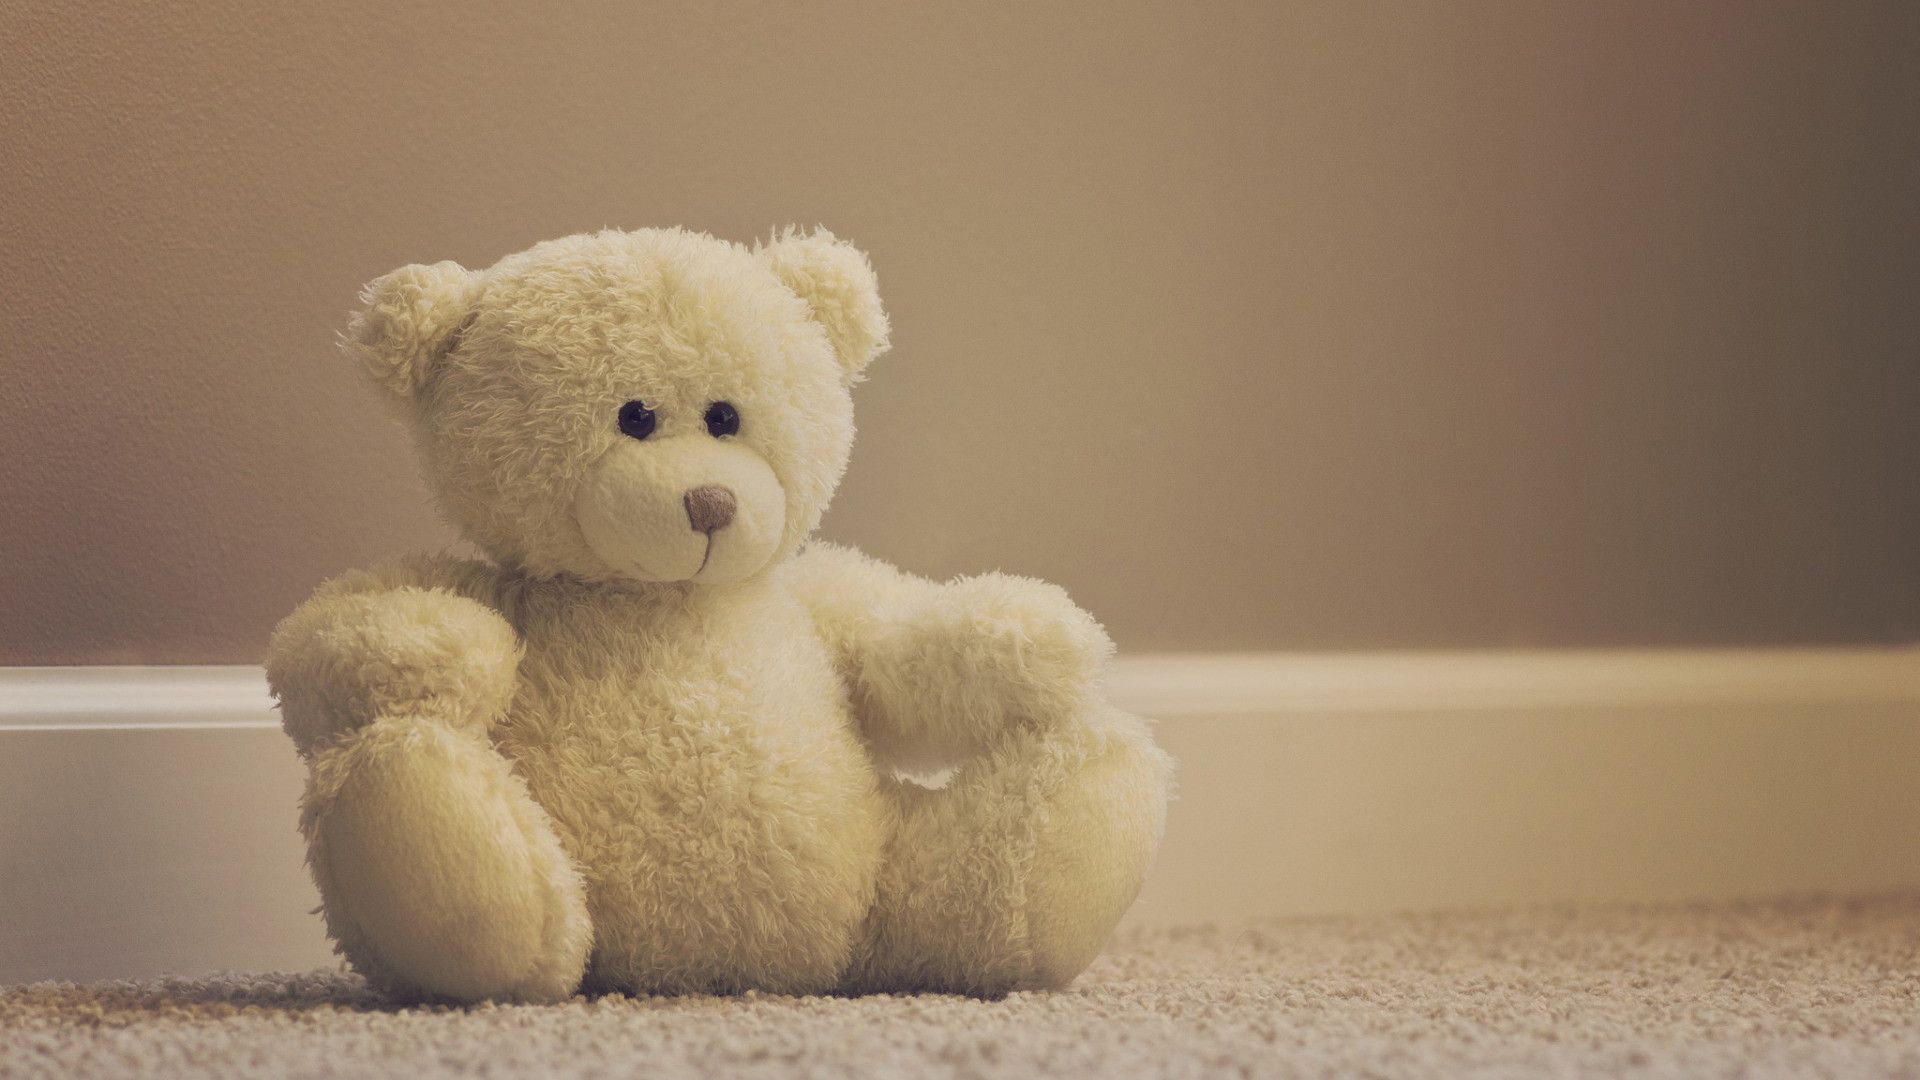 Cute Teddy Bear, Stuffed Bears .teahub.io